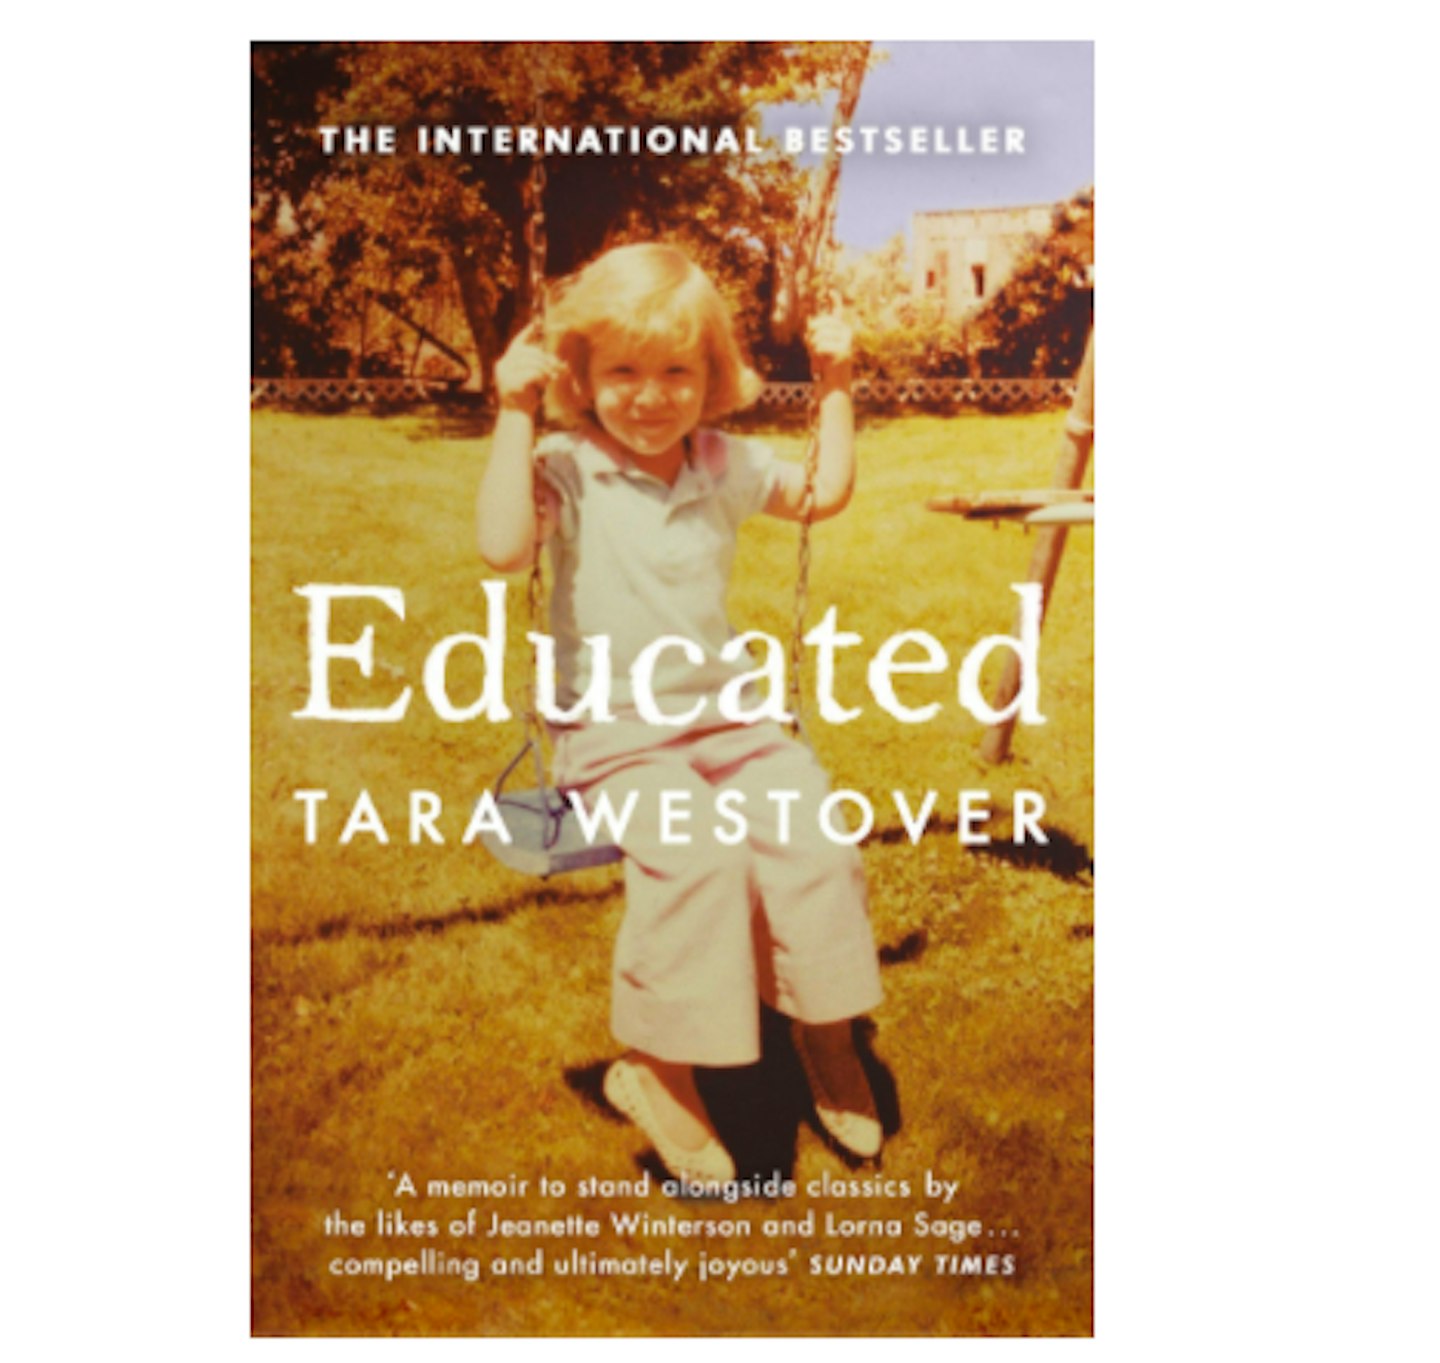 Tara Westover